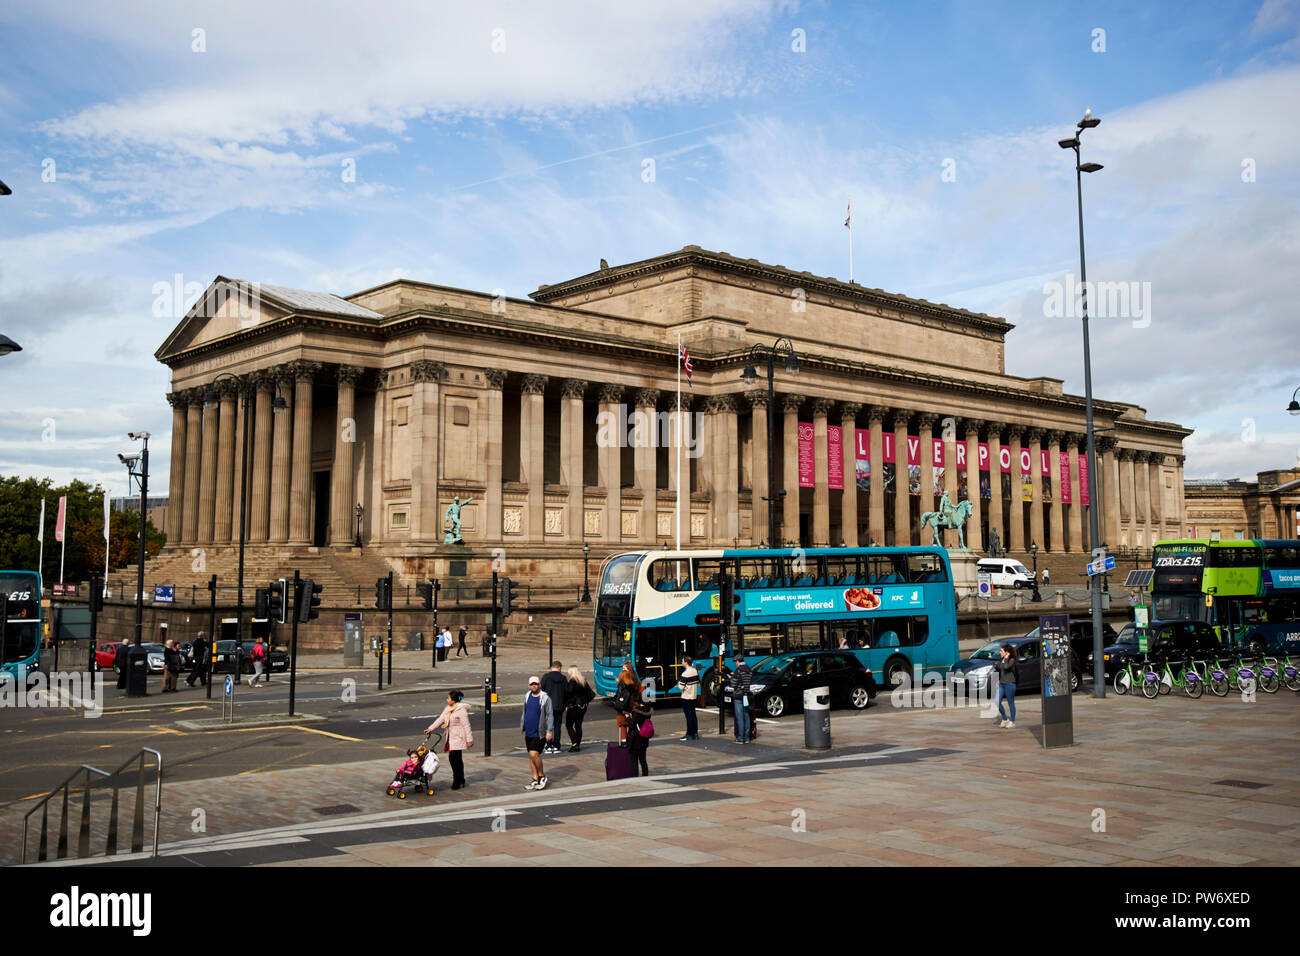 St Georges Hall im Stadtzentrum von Liverpool Merseyside England Großbritannien Stockfoto